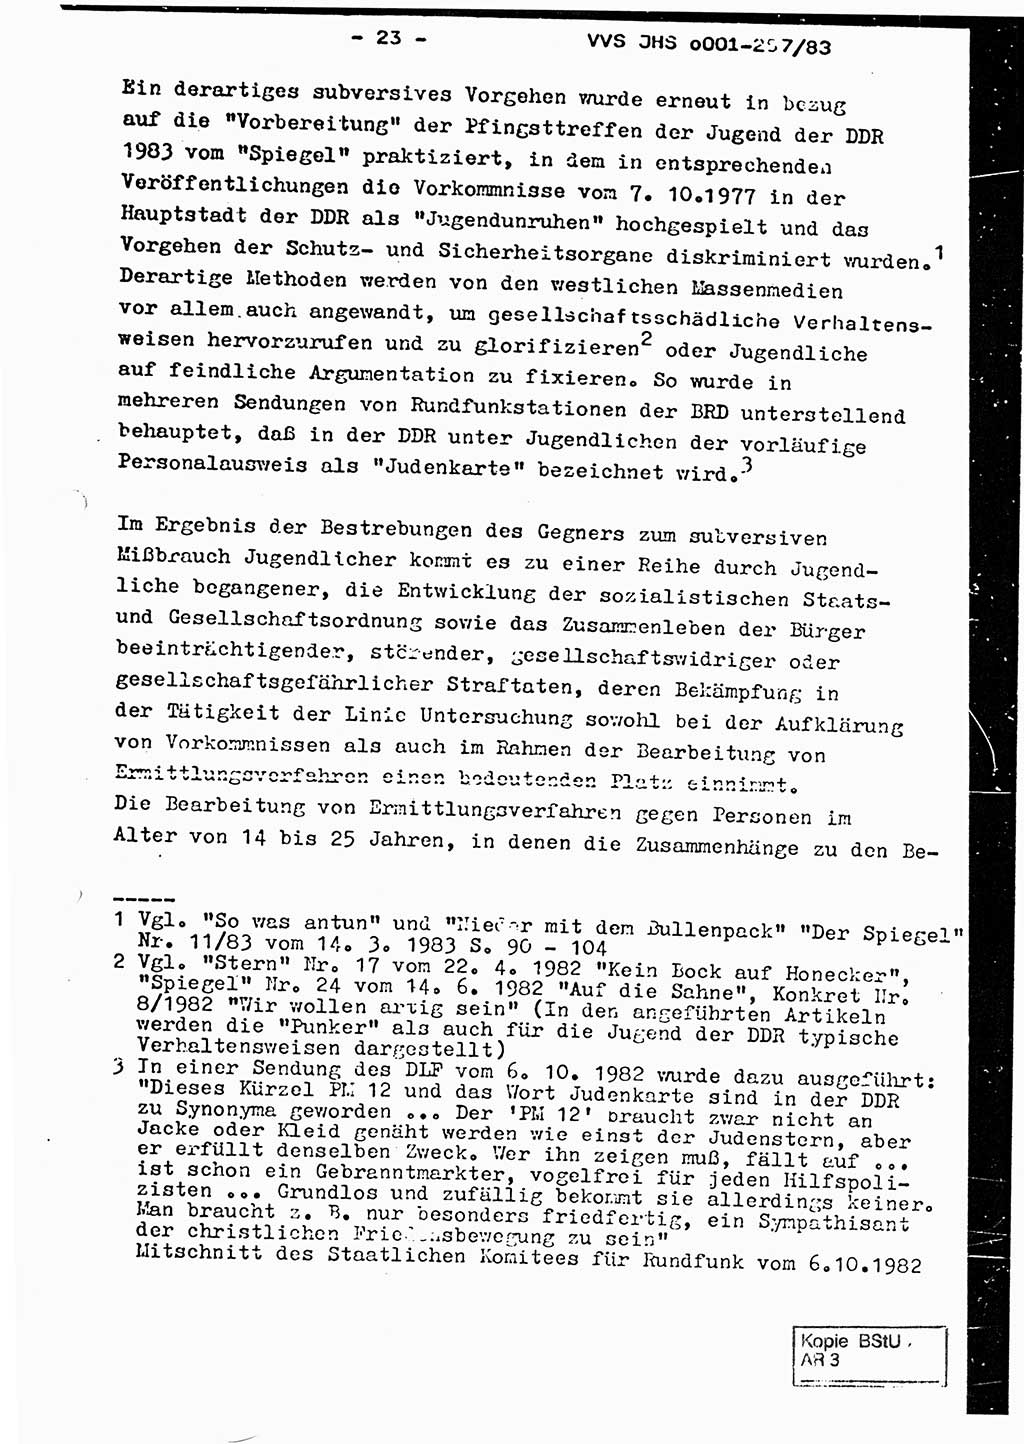 Dissertation, Oberst Helmut Lubas (BV Mdg.), Oberstleutnant Manfred Eschberger (HA IX), Oberleutnant Hans-Jürgen Ludwig (JHS), Ministerium für Staatssicherheit (MfS) [Deutsche Demokratische Republik (DDR)], Juristische Hochschule (JHS), Vertrauliche Verschlußsache (VVS) o001-257/83, Potsdam 1983, Seite 23 (Diss. MfS DDR JHS VVS o001-257/83 1983, S. 23)